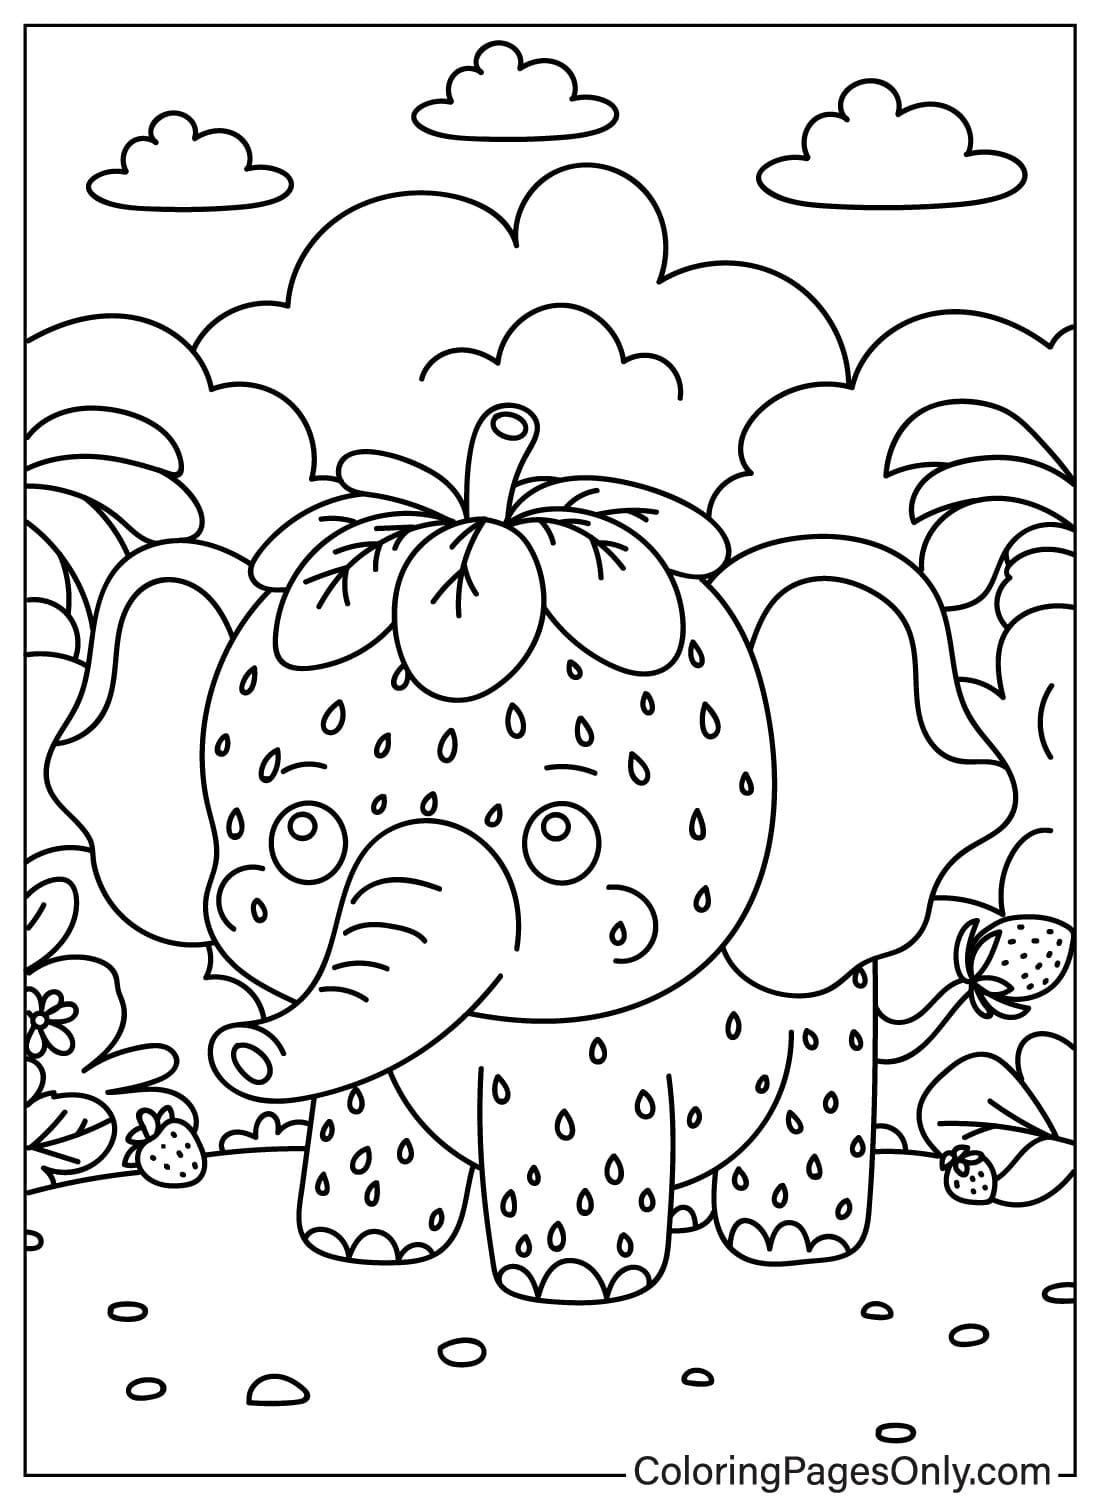 Página para colorear de Elefante de Fresa Kawaii de Elefante de Fresa